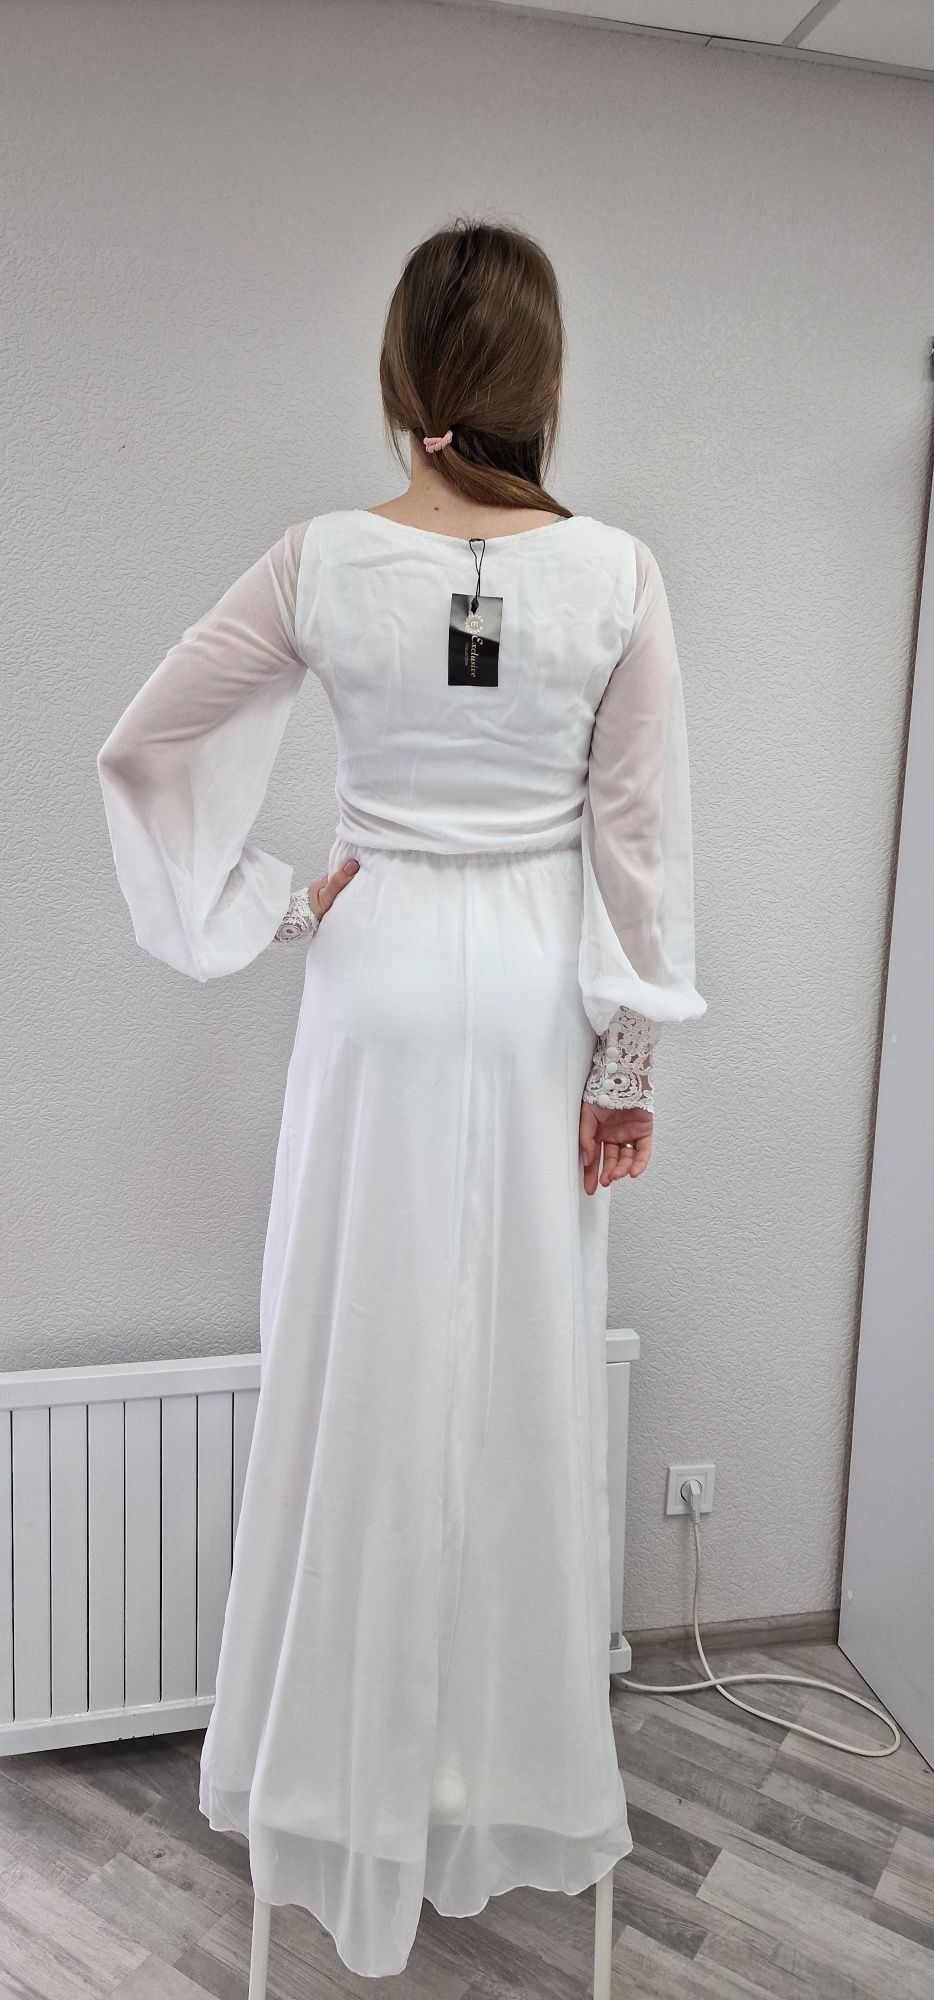 Біла святкова весільна сукня без шлейфа, мереживо